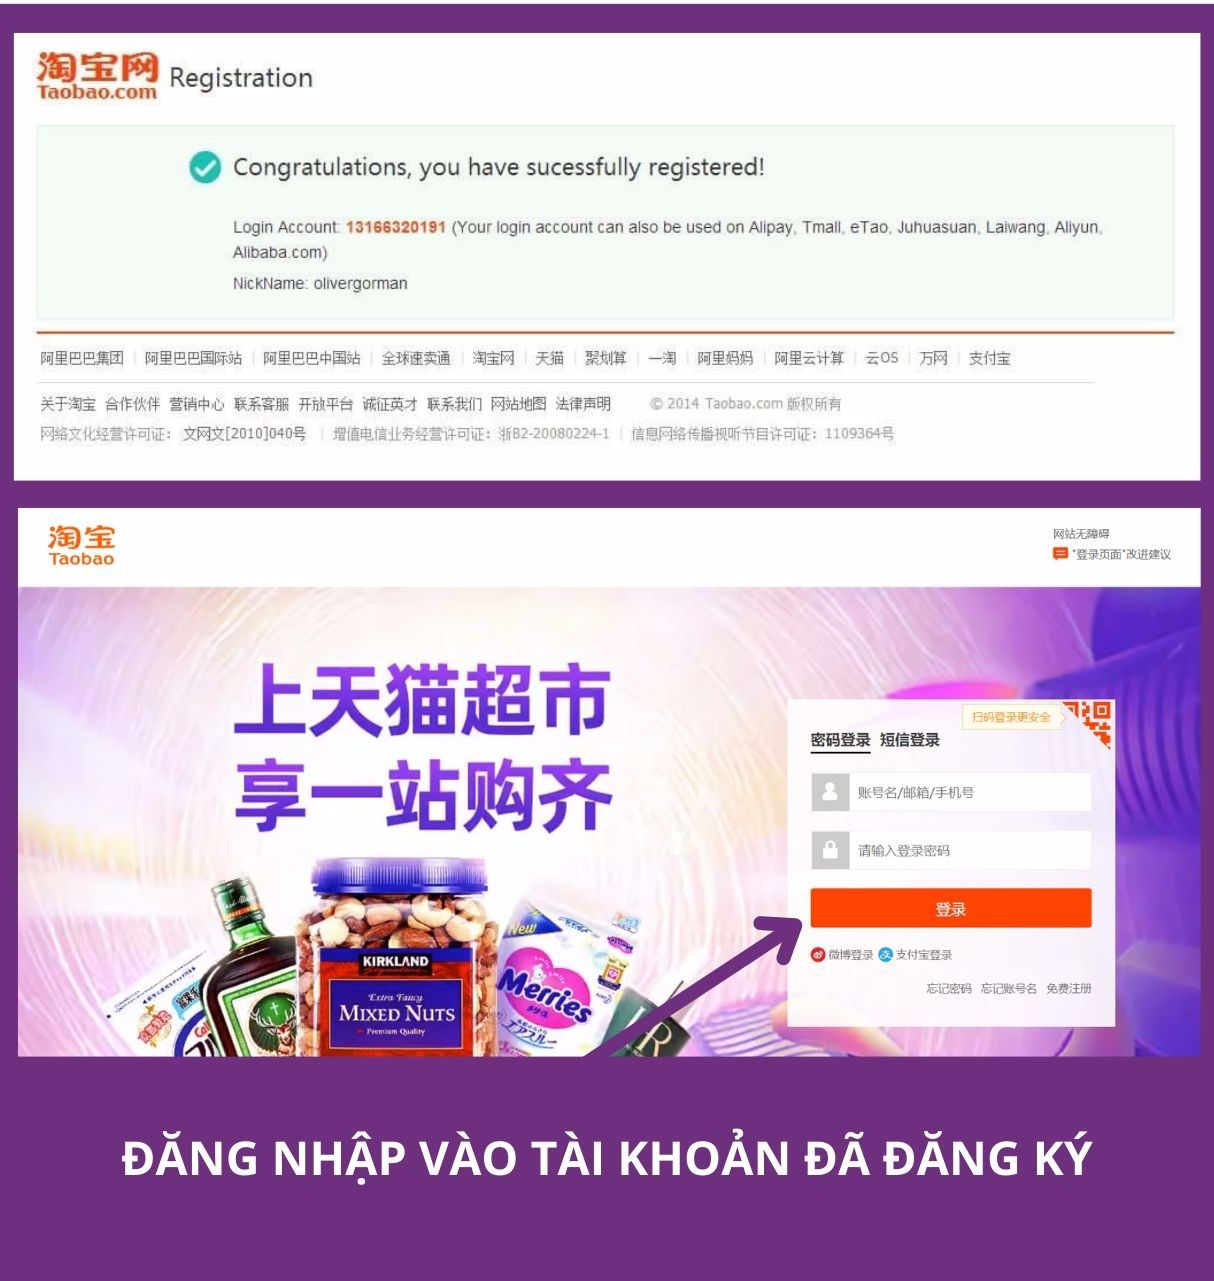 Đăng nhập vào Taobao trên máy tính bằng tài khoản vừa đăng ký